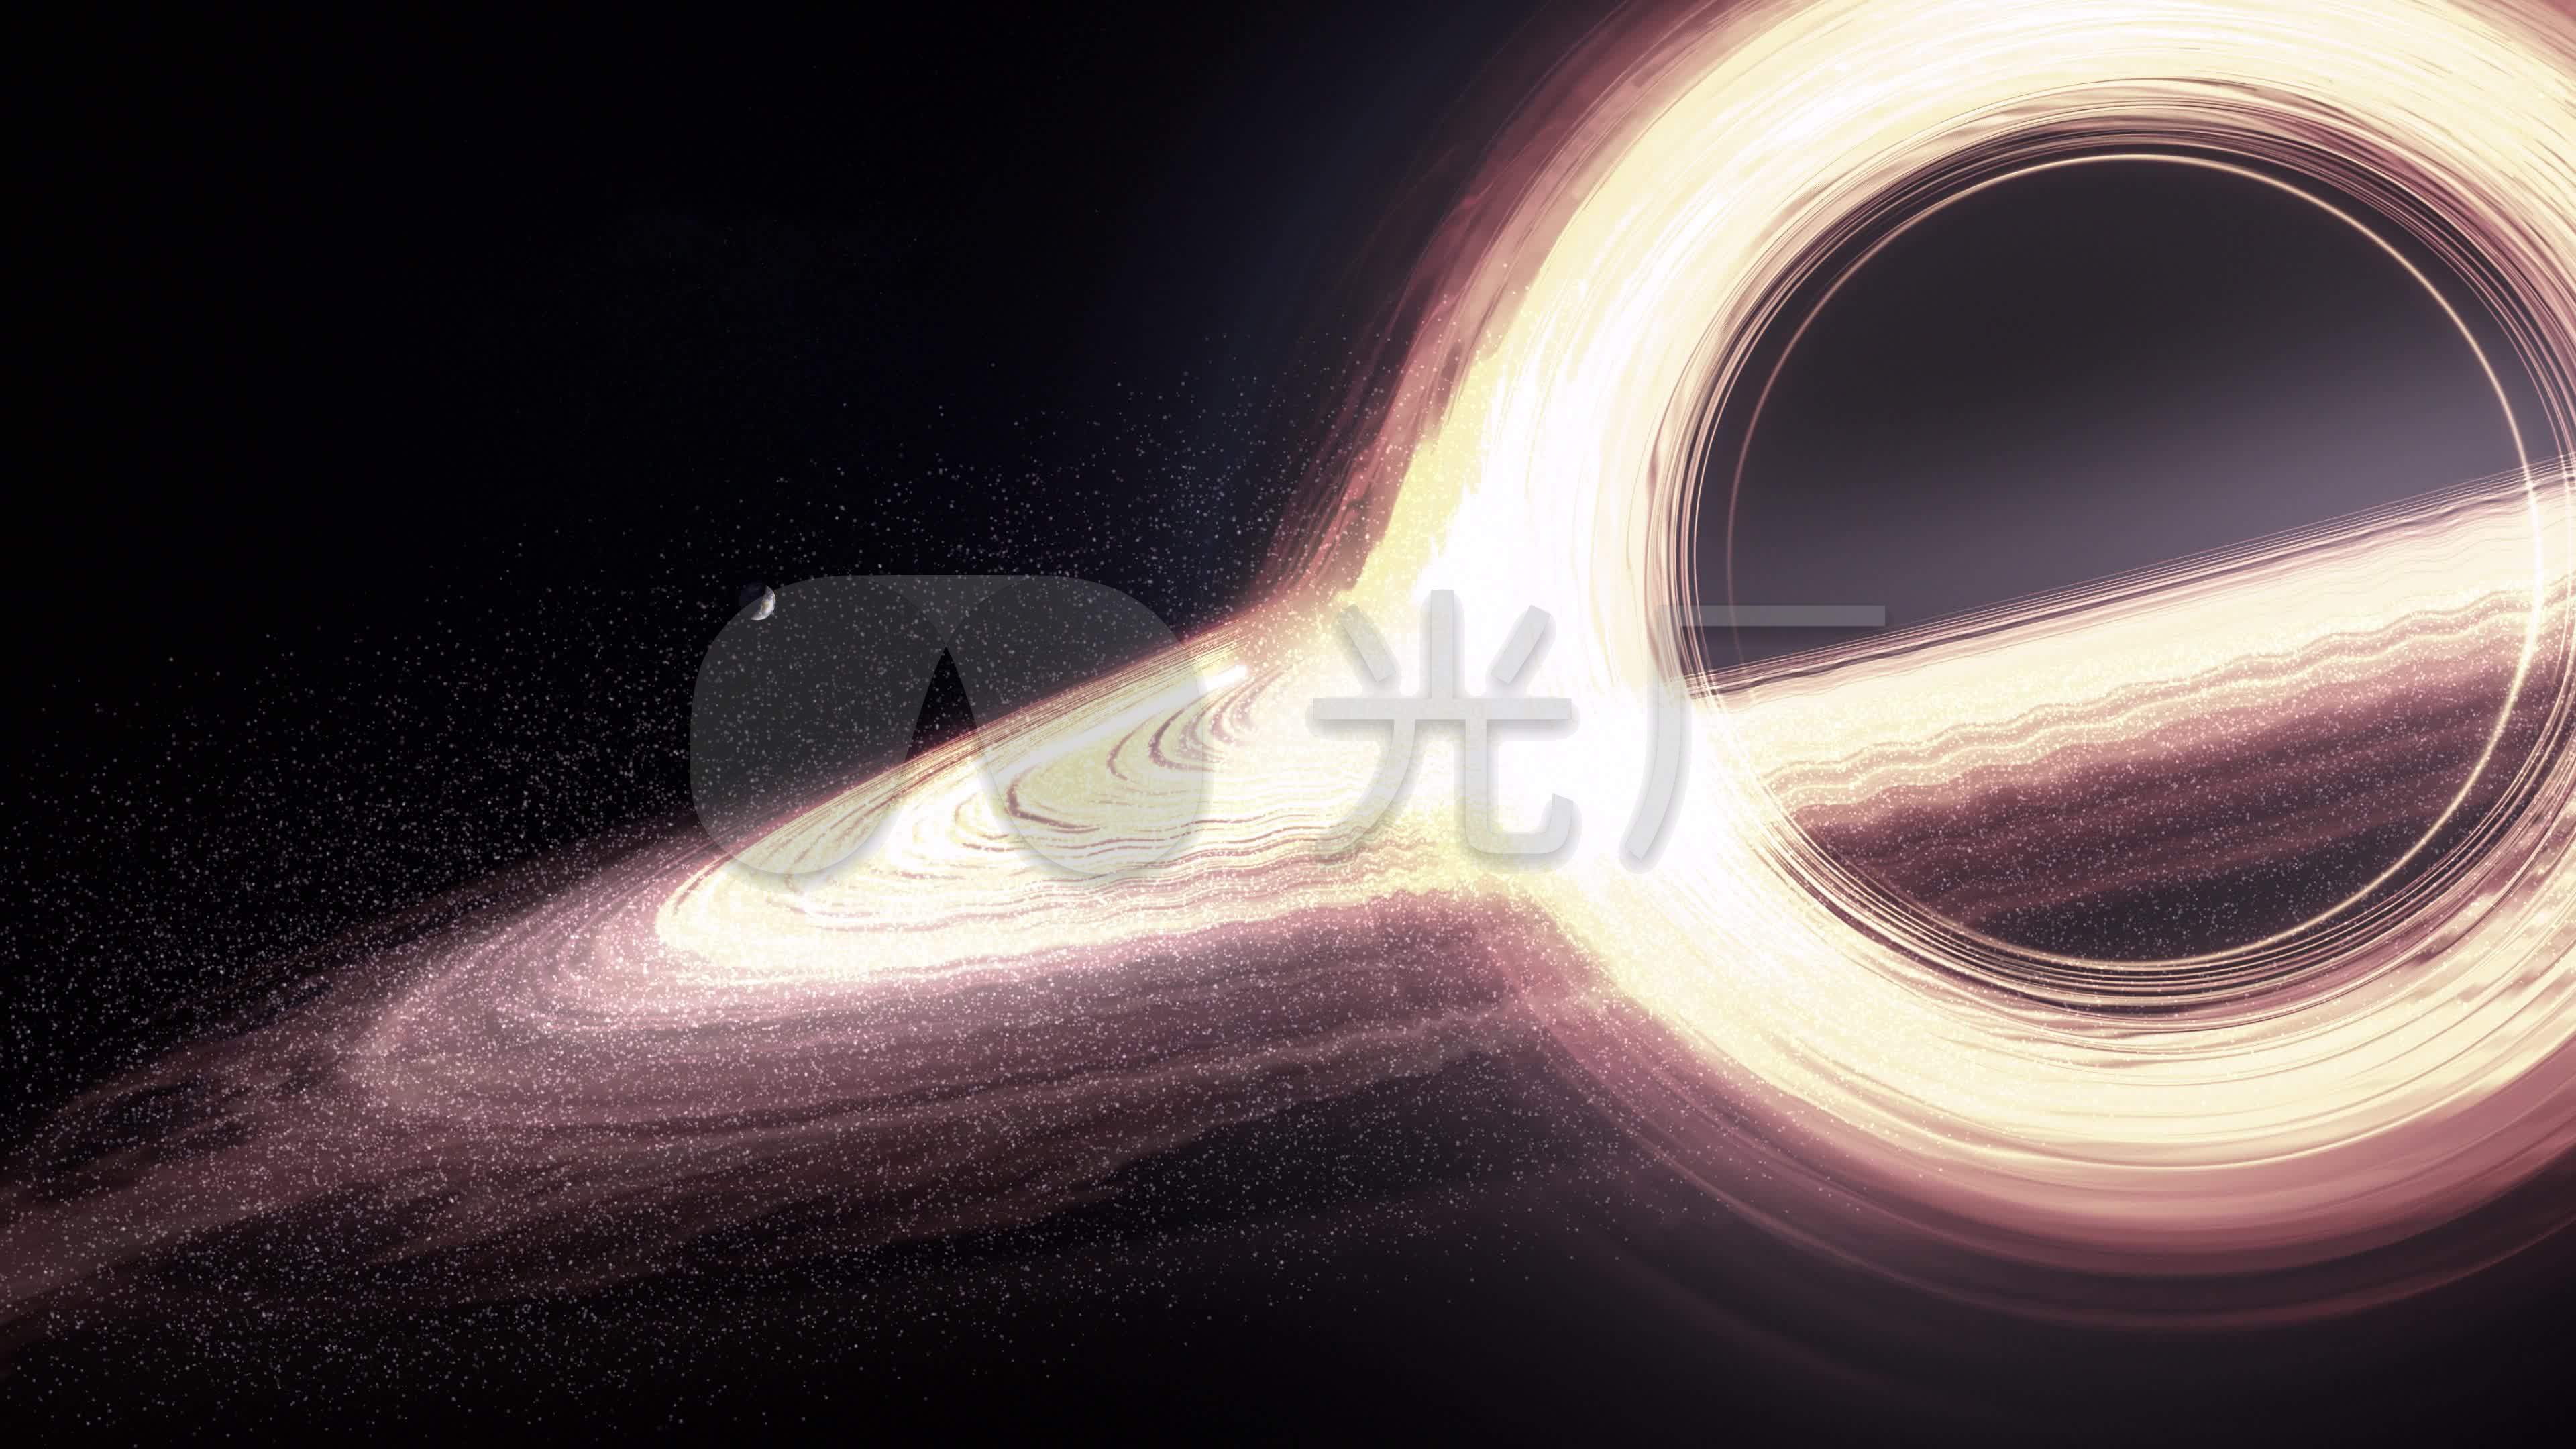 一部了解黑洞的优秀纪录片《黑洞启示录》Nova Black Hole Apocalypse.2018.1080P._哔哩哔哩_bilibili